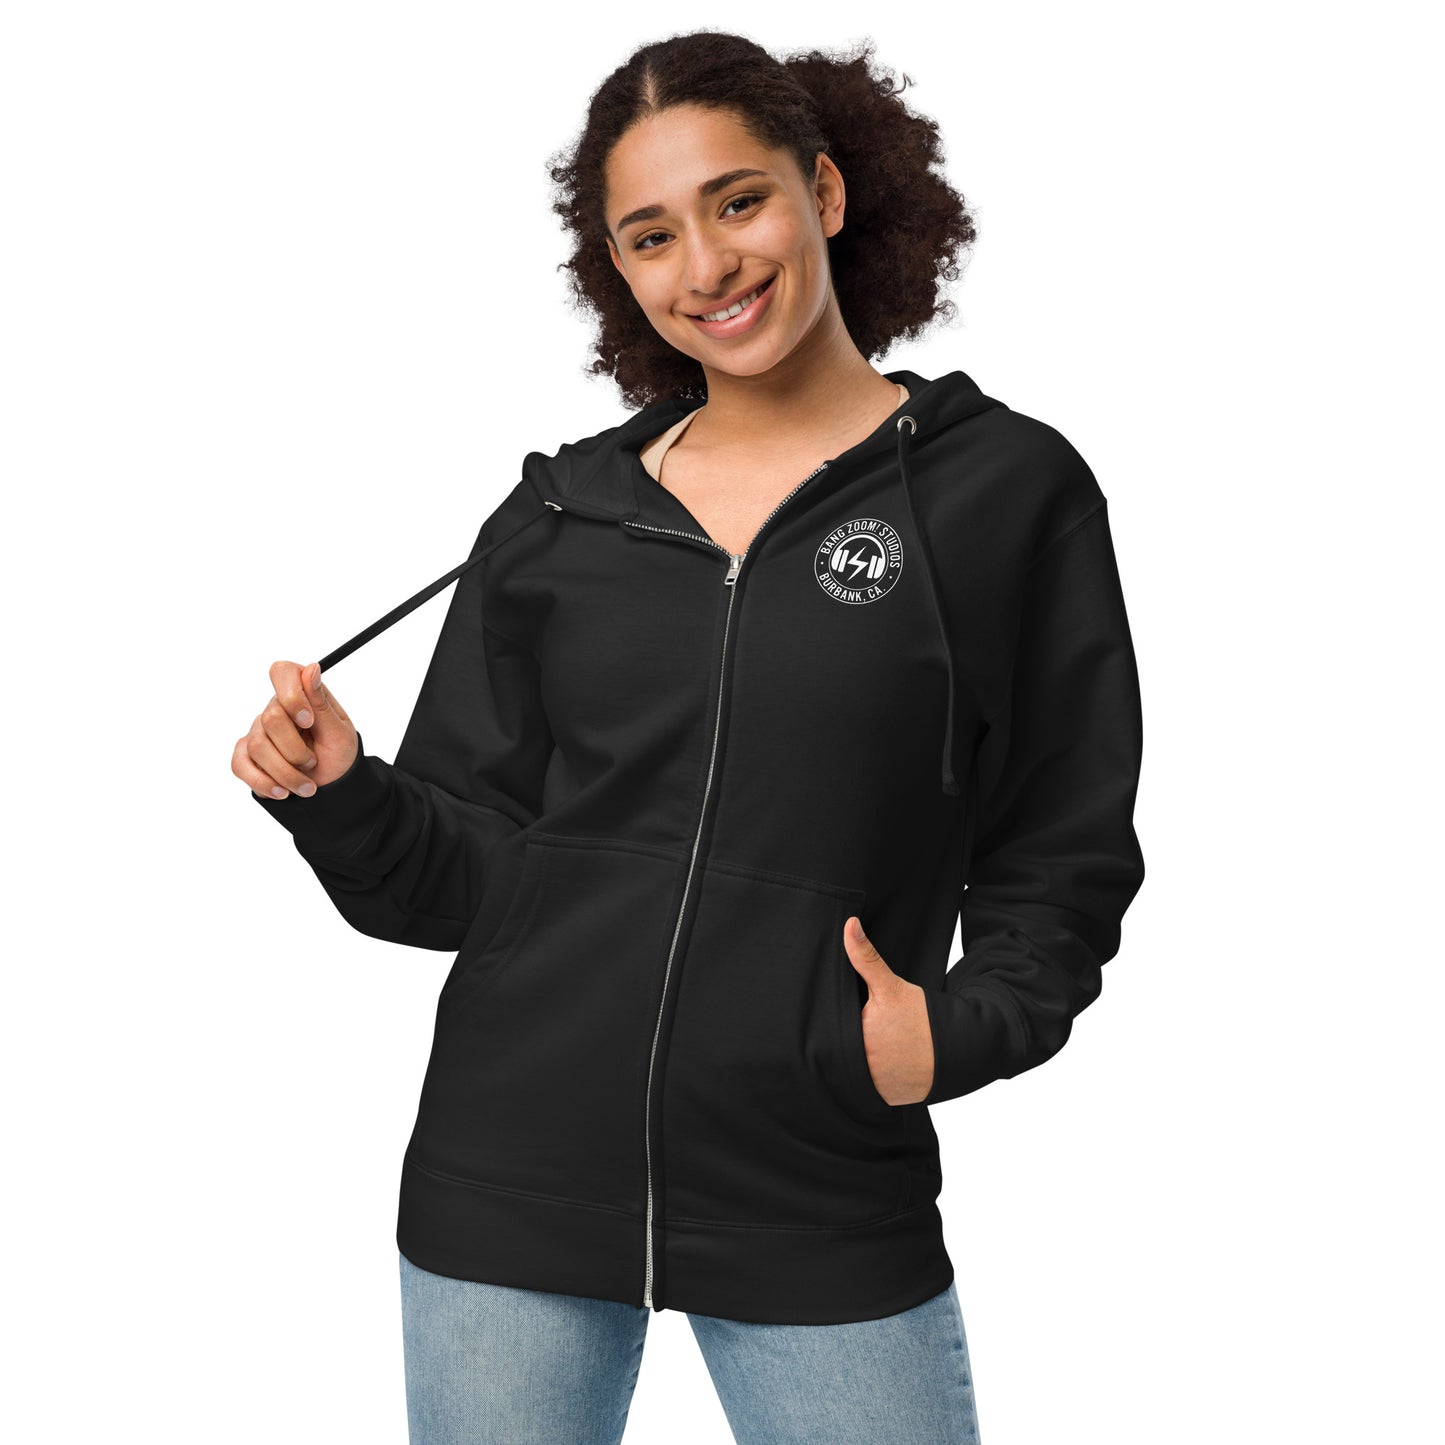 Unisex Bang Zoom Headphone Logo fleece zip up hoodie with back printing